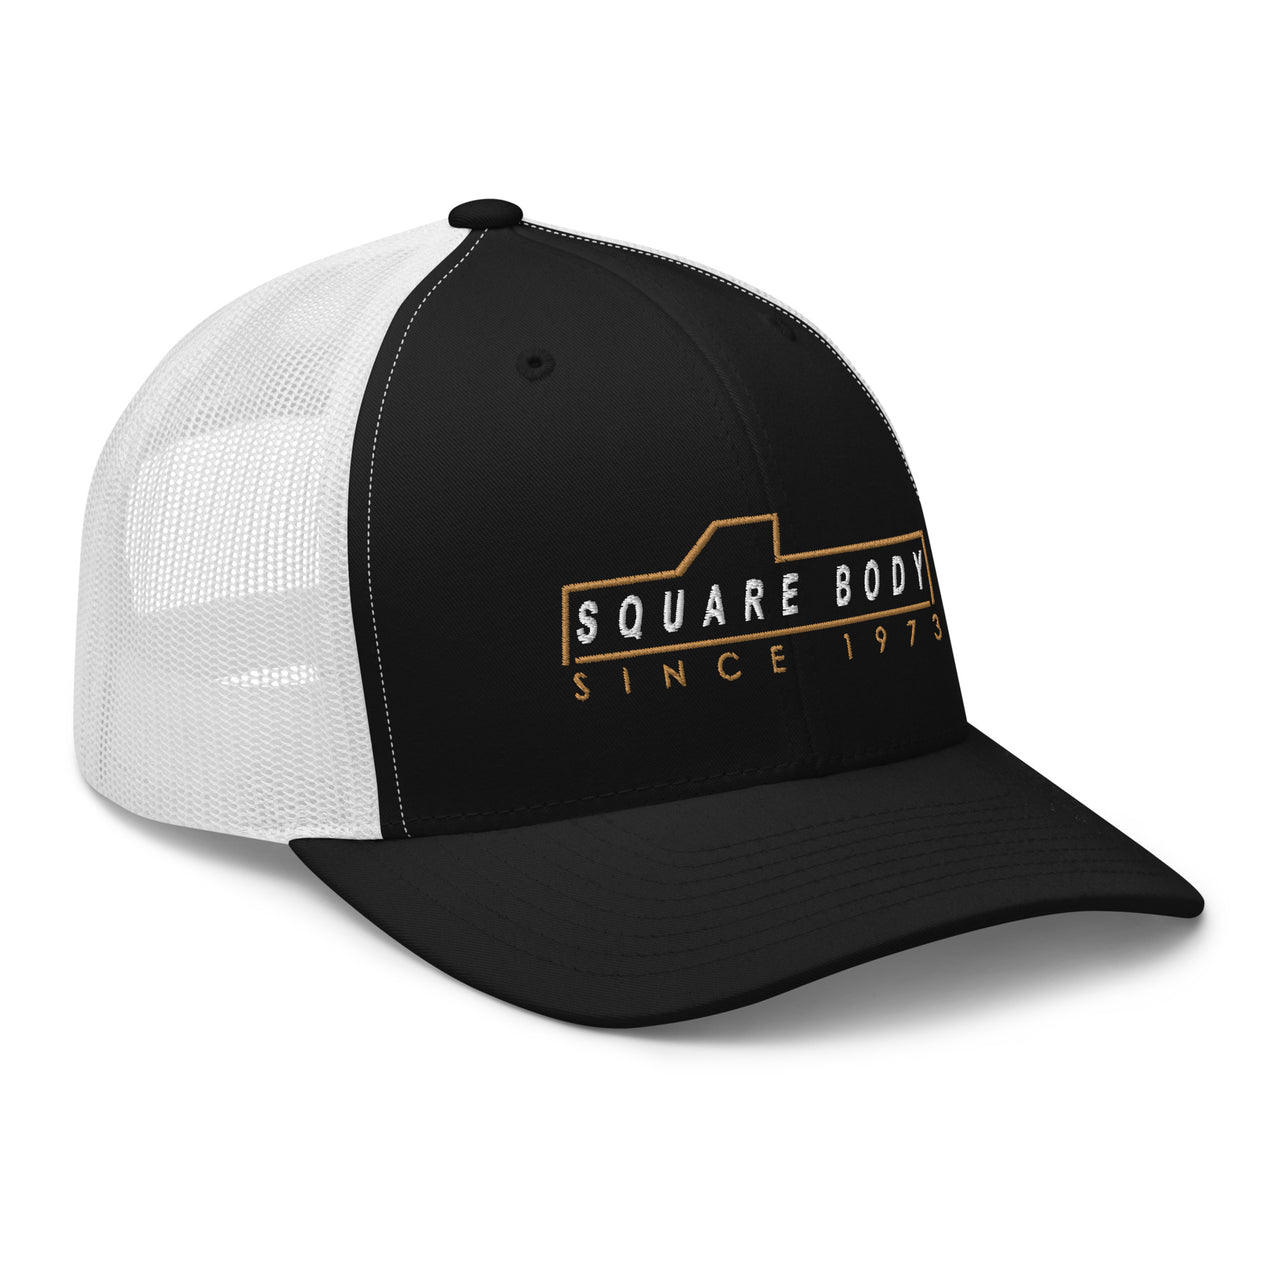 3/4 view right of square body trucker hat in black and white- Aggressive Thread Auto Apparel